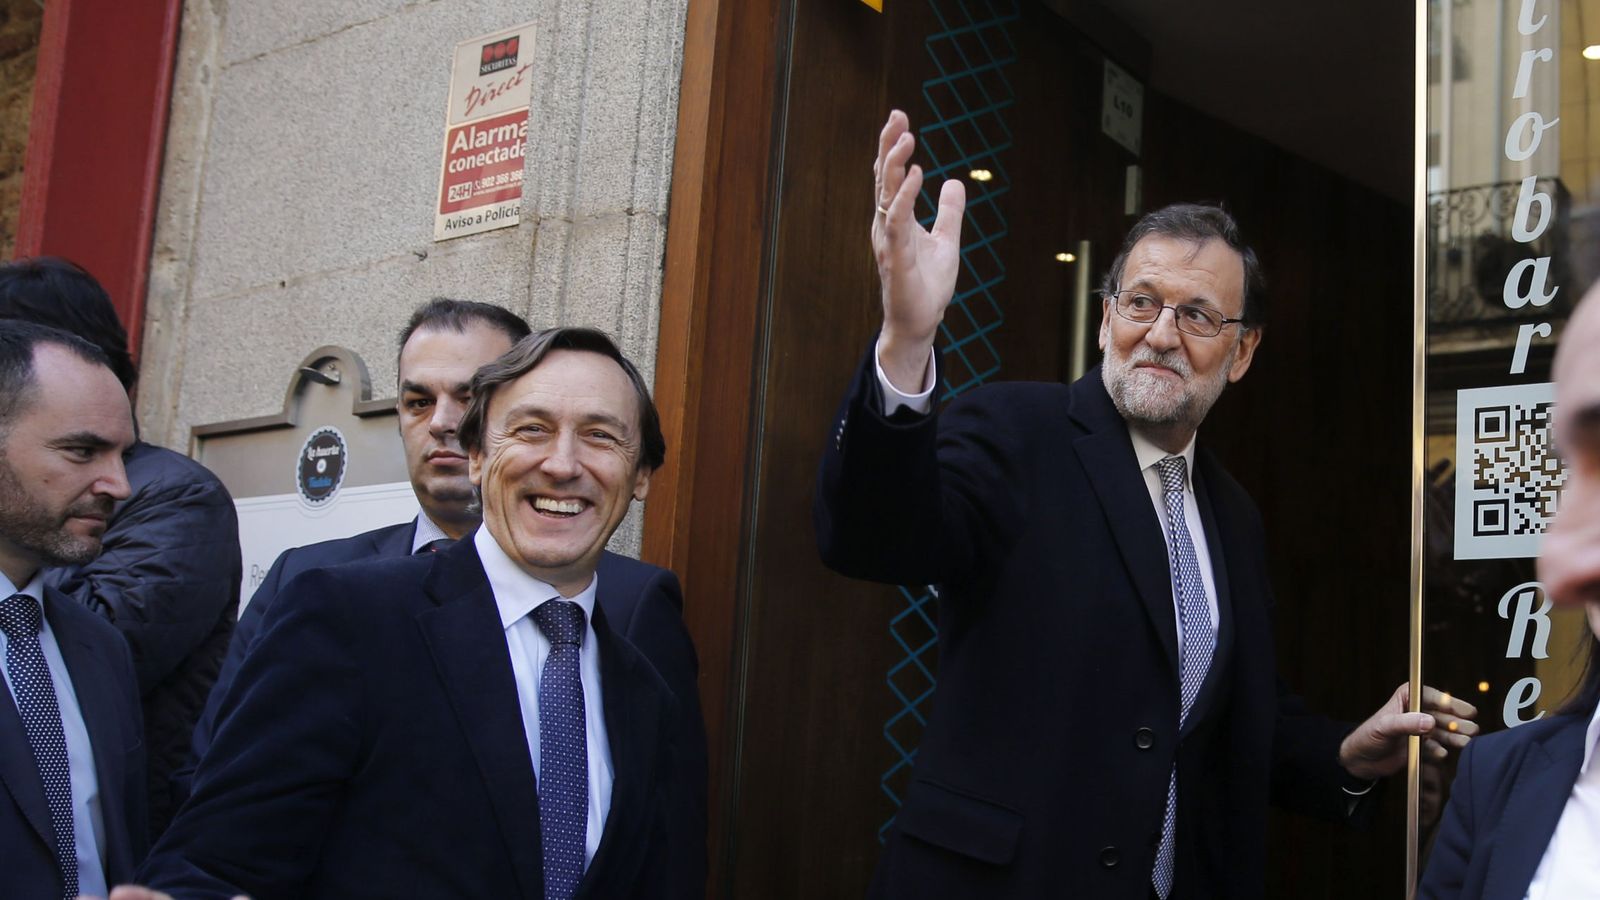 Foto: Mariano Rajoy entrando en un restaurante cercano al Congreso de los Diputados en Madrid. (EFE)